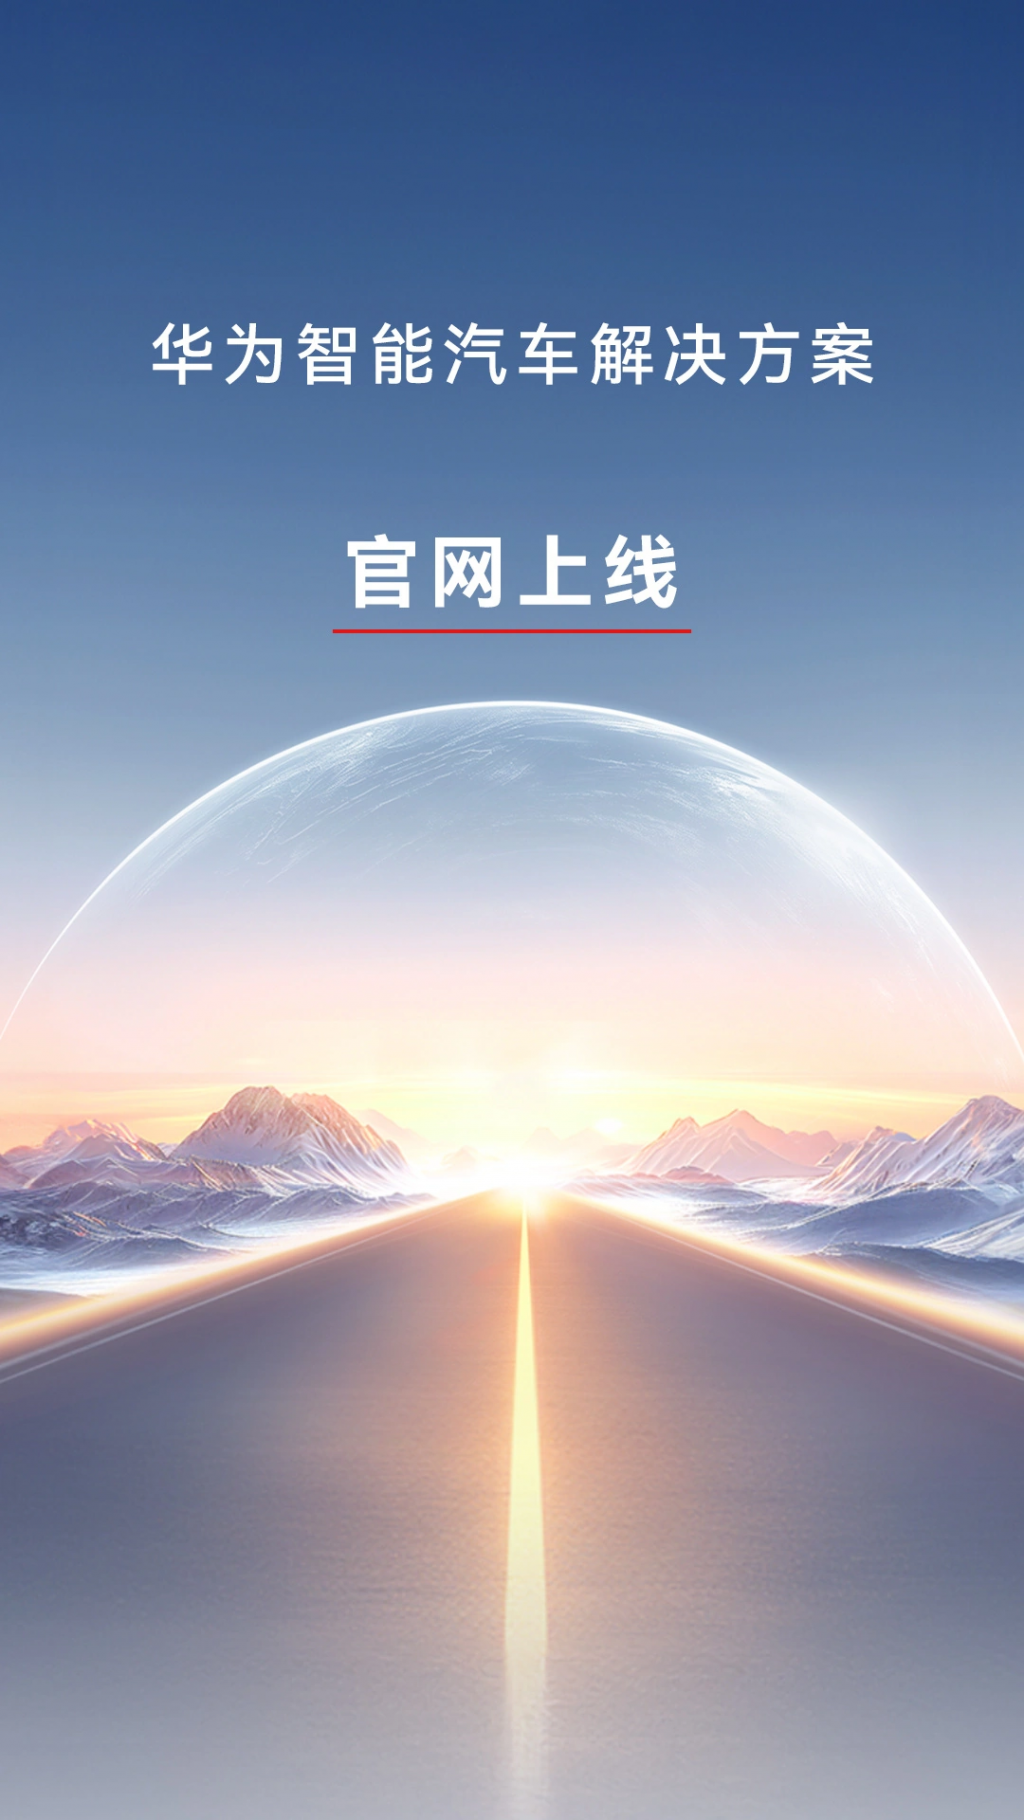 华为智能汽车解决方案官网上线，4 月 24 日举办新品发布会